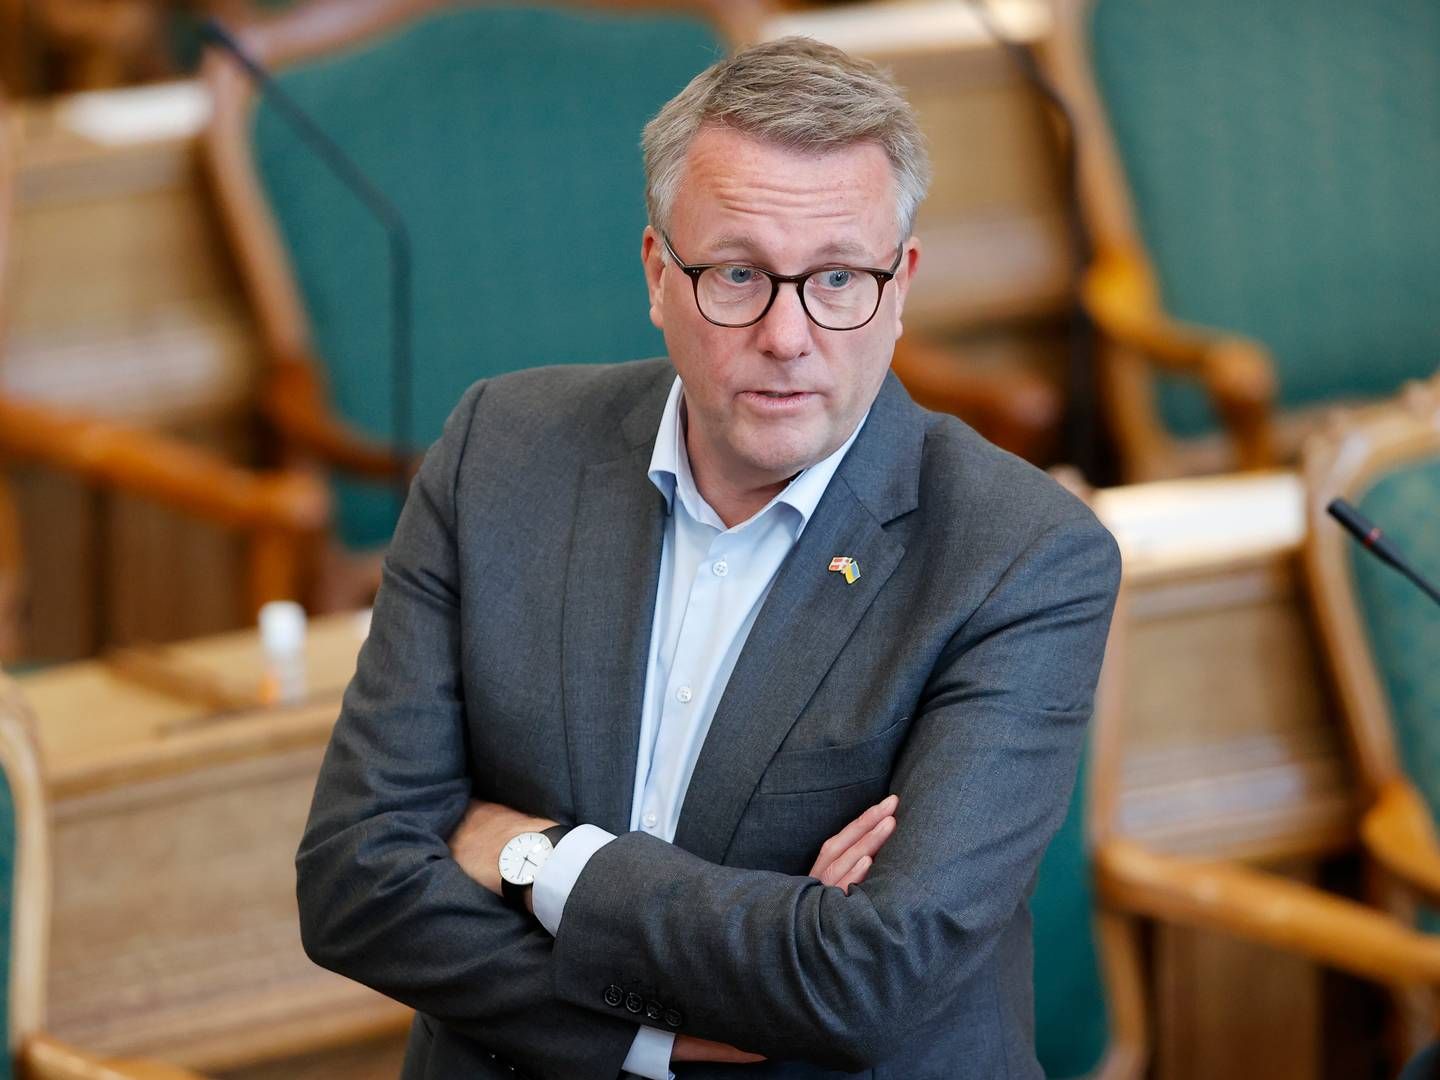 Erhvervsminister Morten Bødskov (S) har fået overdraget en række mulige besparelser på erhvervsområdet, som nu skal gennemgåes. | Foto: Jens Dresling/Ritzau Scanpix